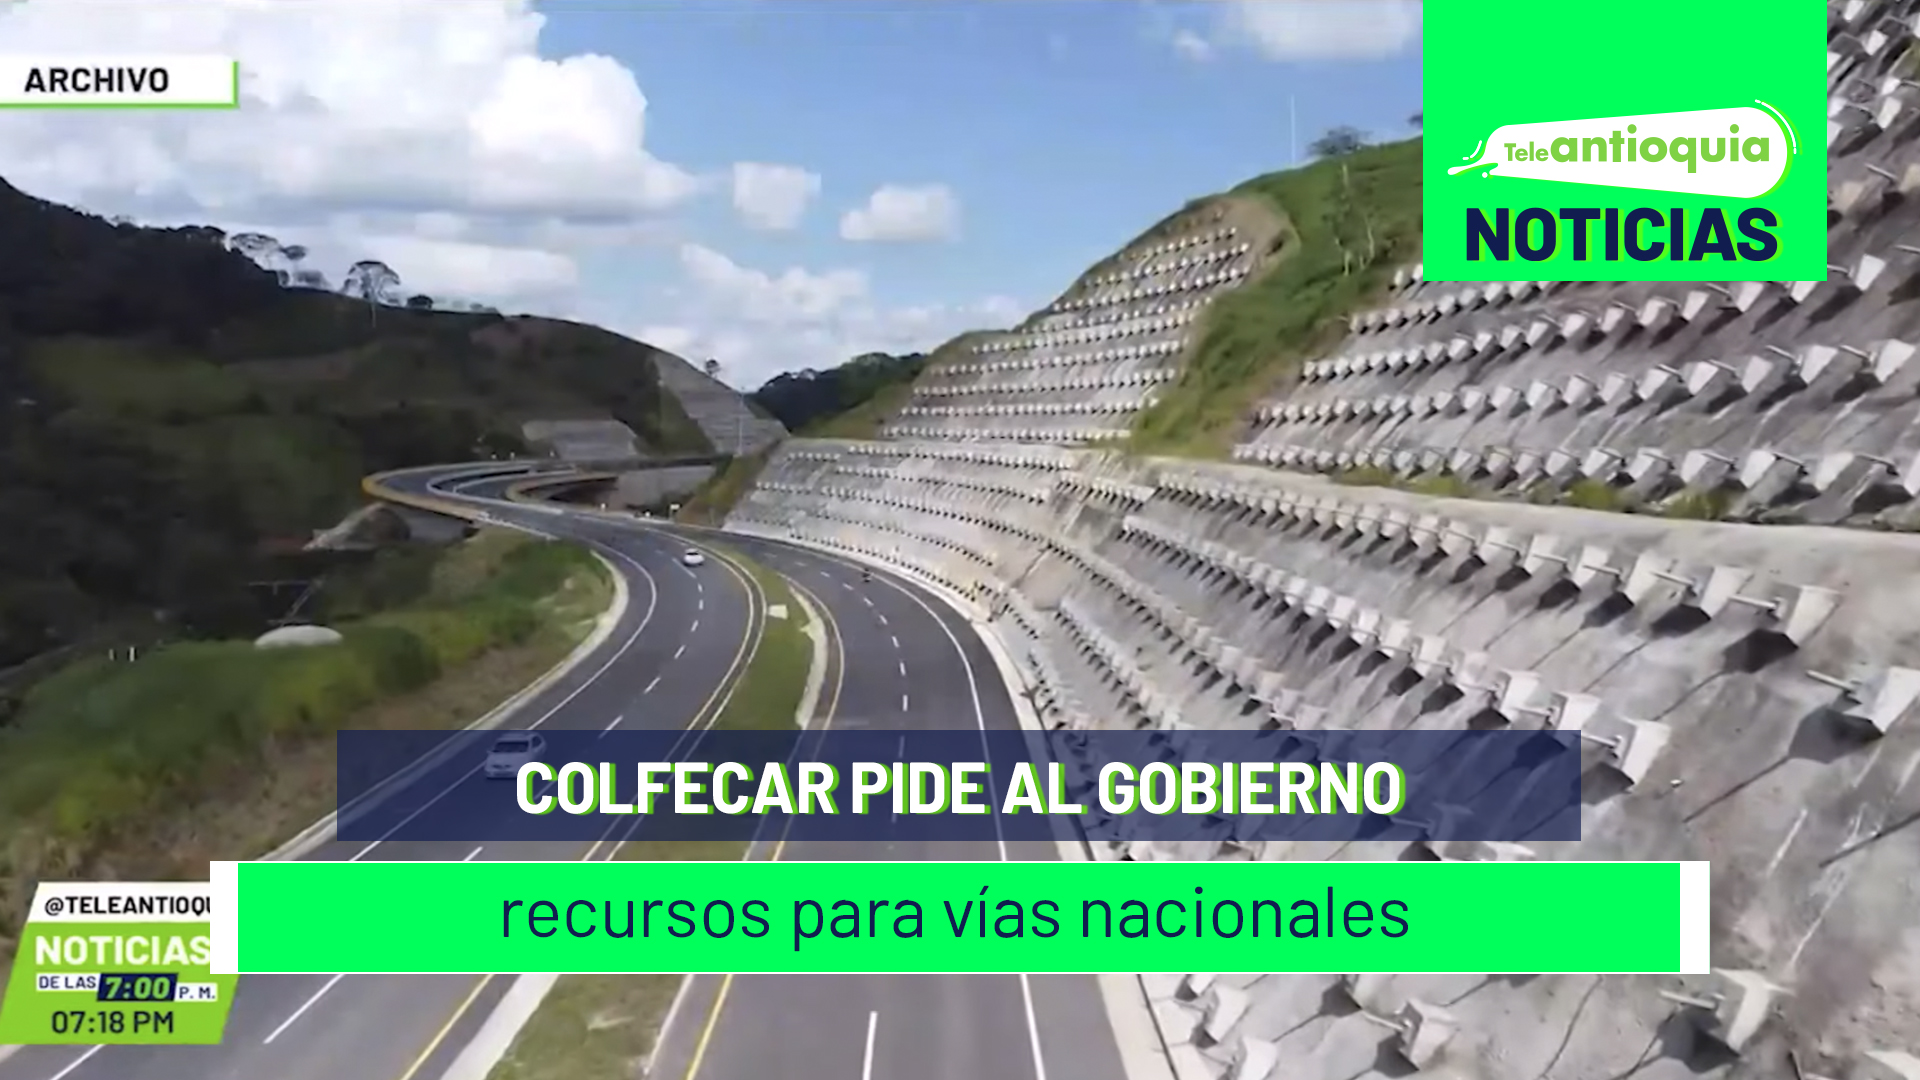 Colfecar pide al gobierno recursos para vías nacionales